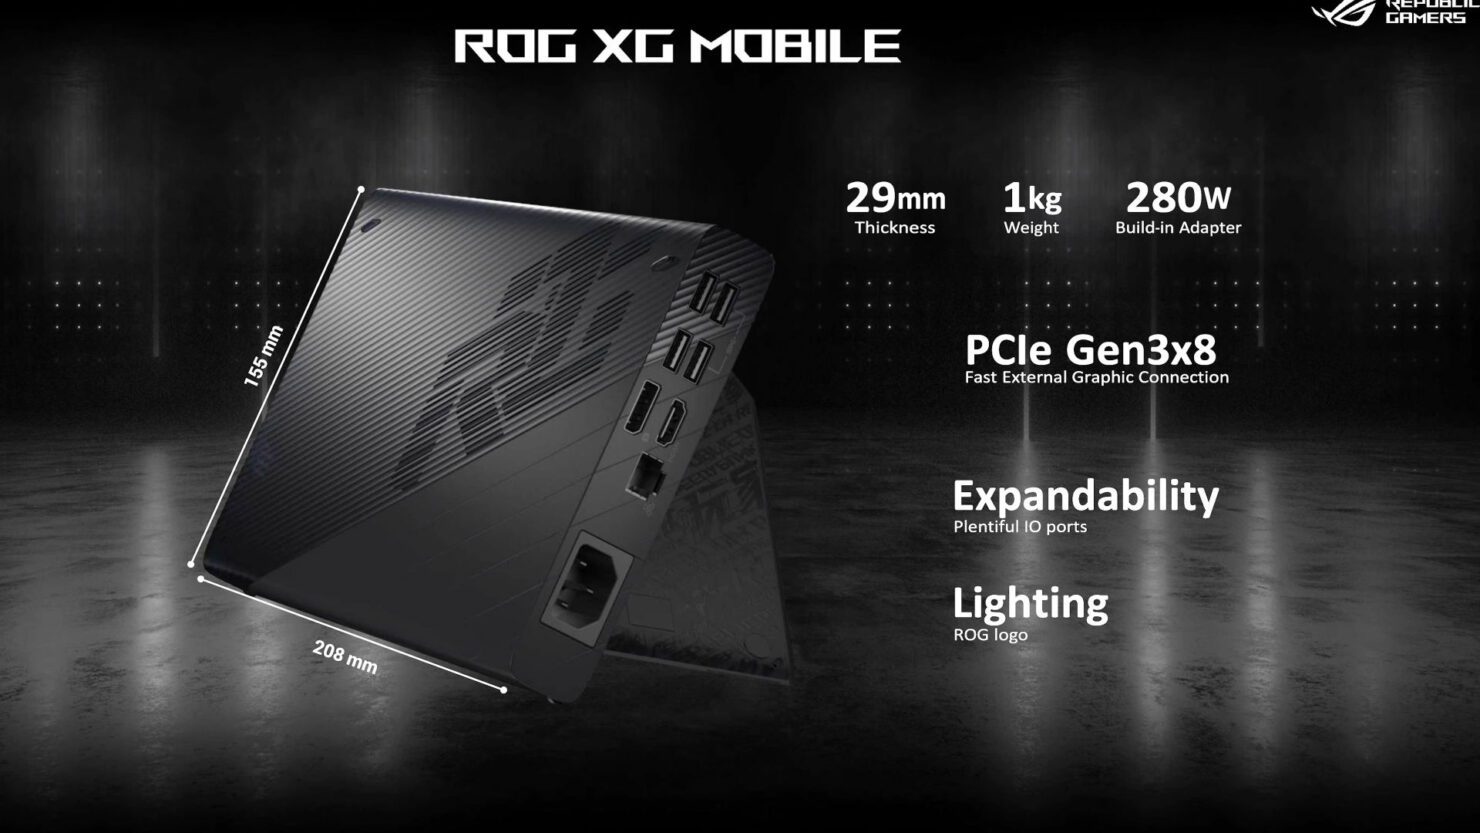 Asus presenta la ROG Flow Z13, la tablet gaming más potente del mundo - El 4 de enero tenemos todos los amantes del hardware una cita para conocer más acerca de la nueva tablet gaming Asus ROG Flow Z13.